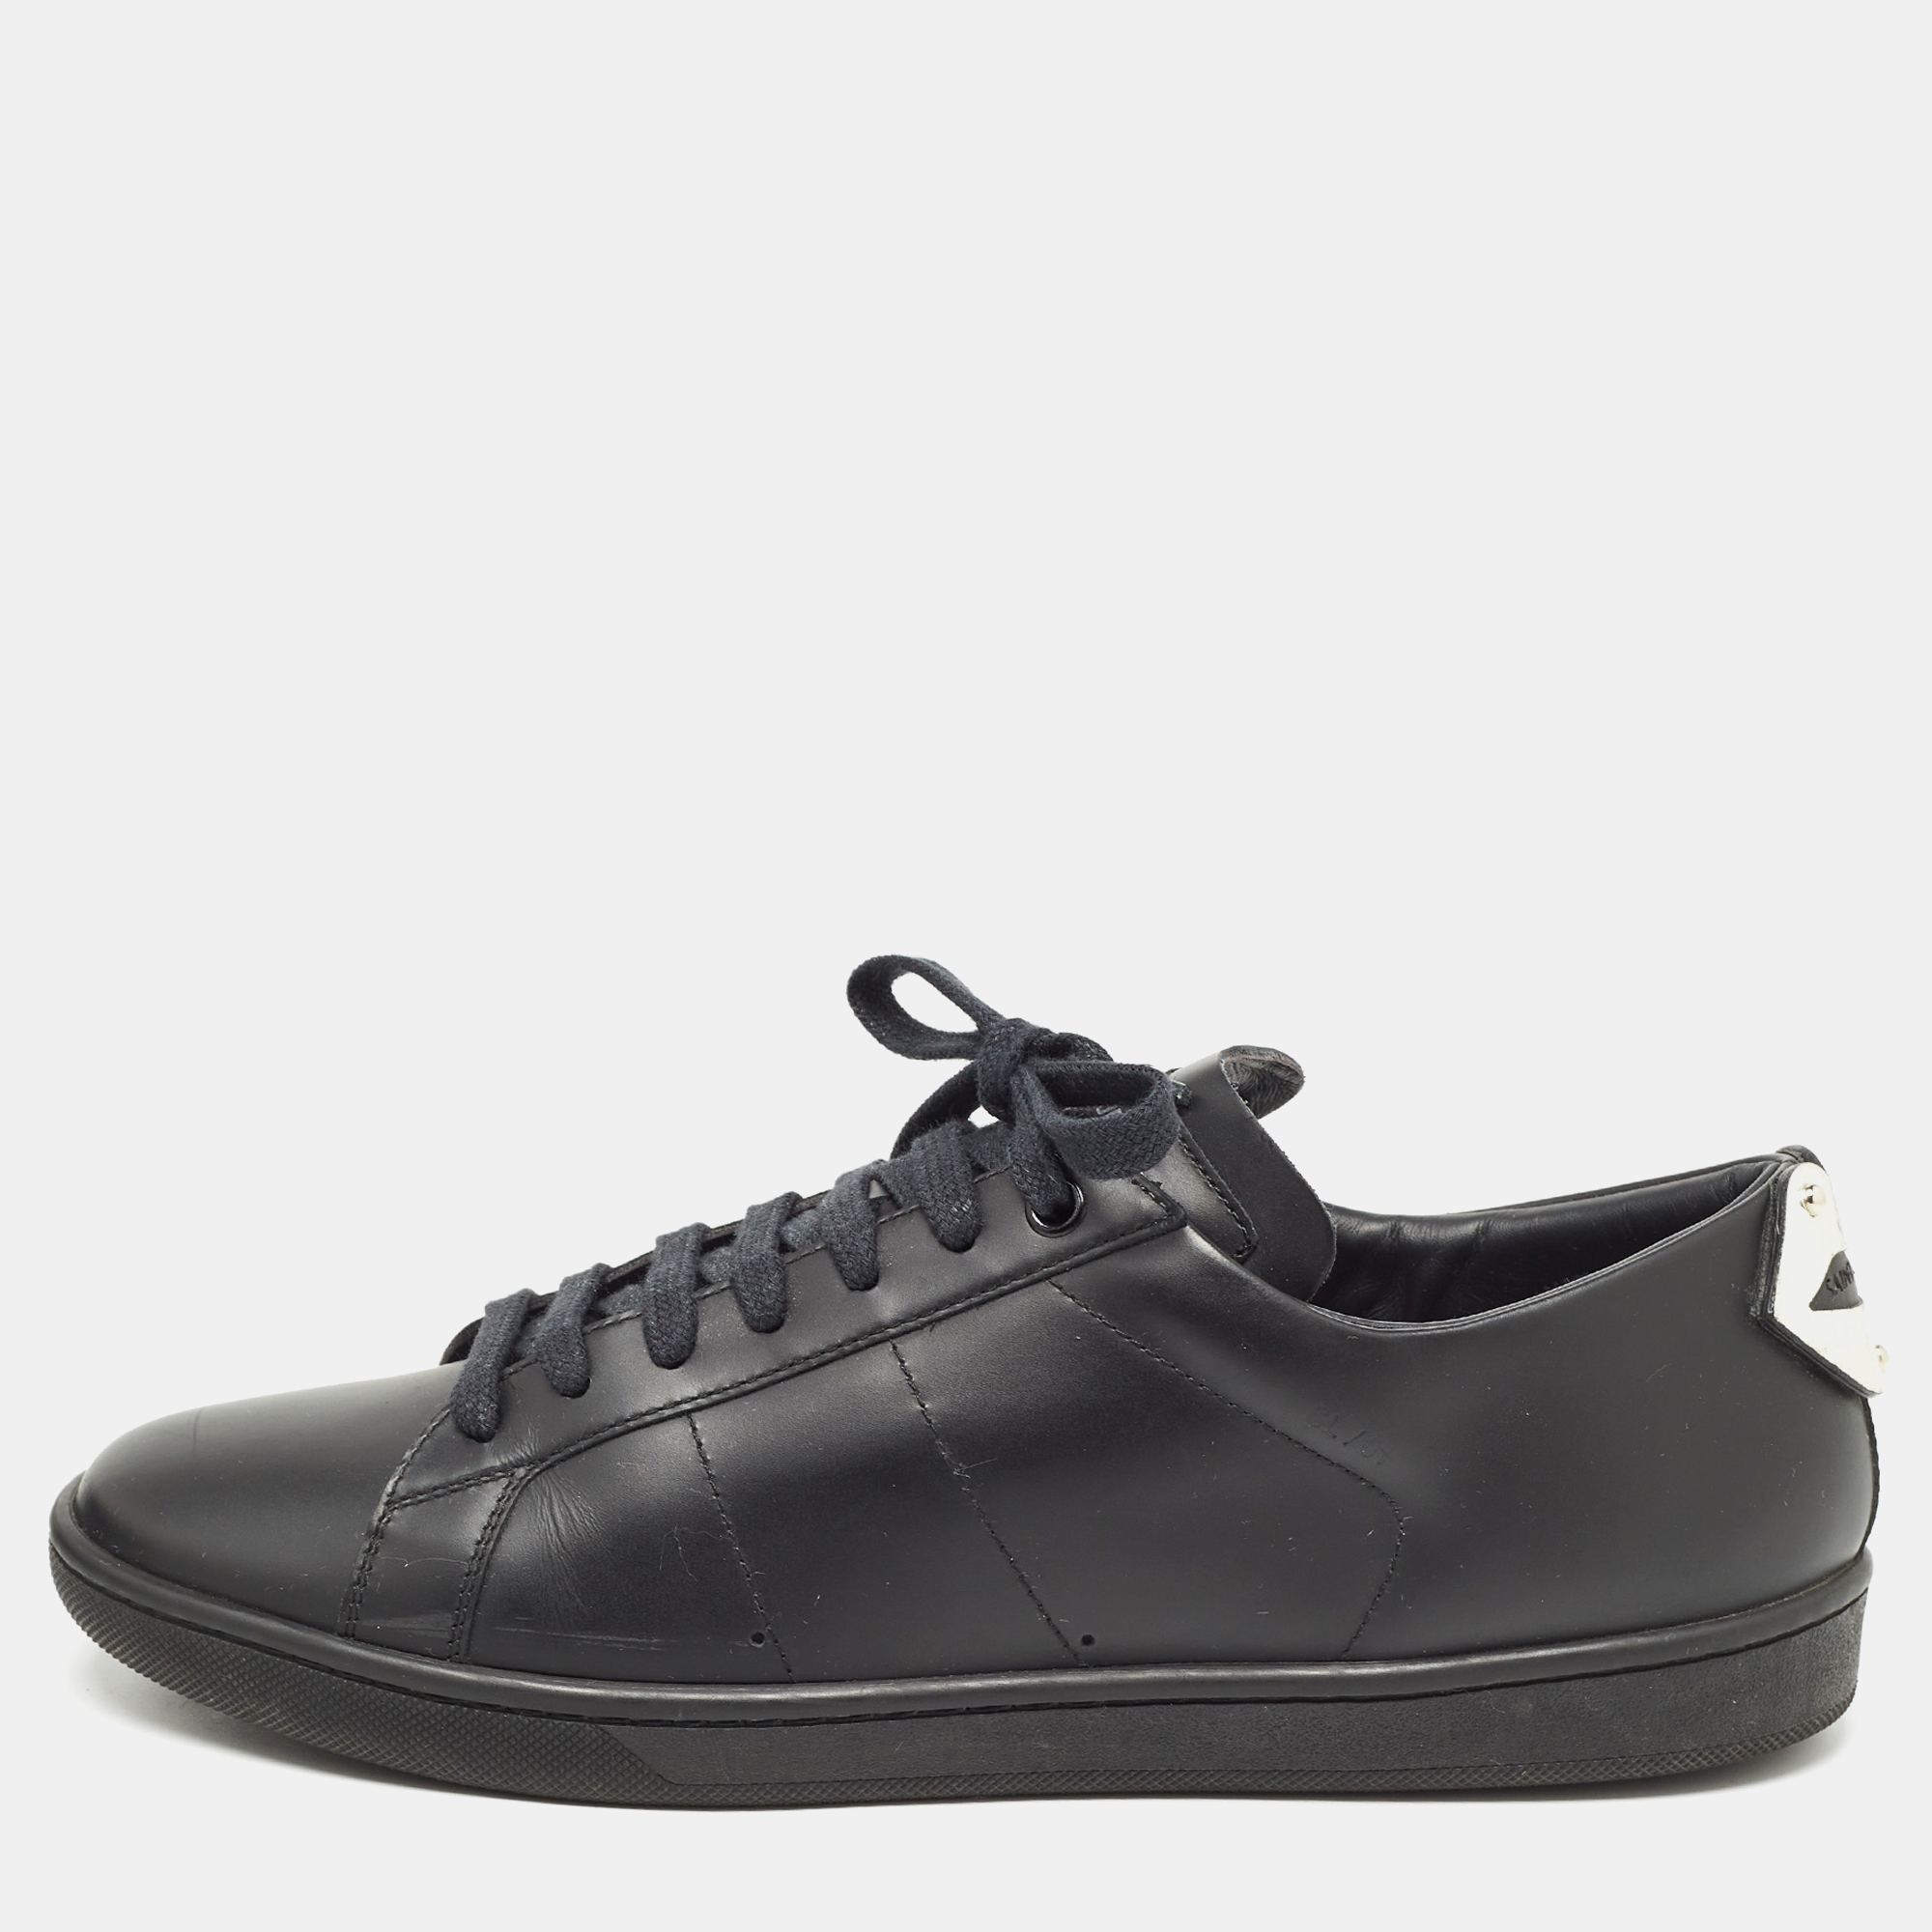 

Saint Laurent Paris Black Leather Court Classic Lips Low Top Sneakers Size